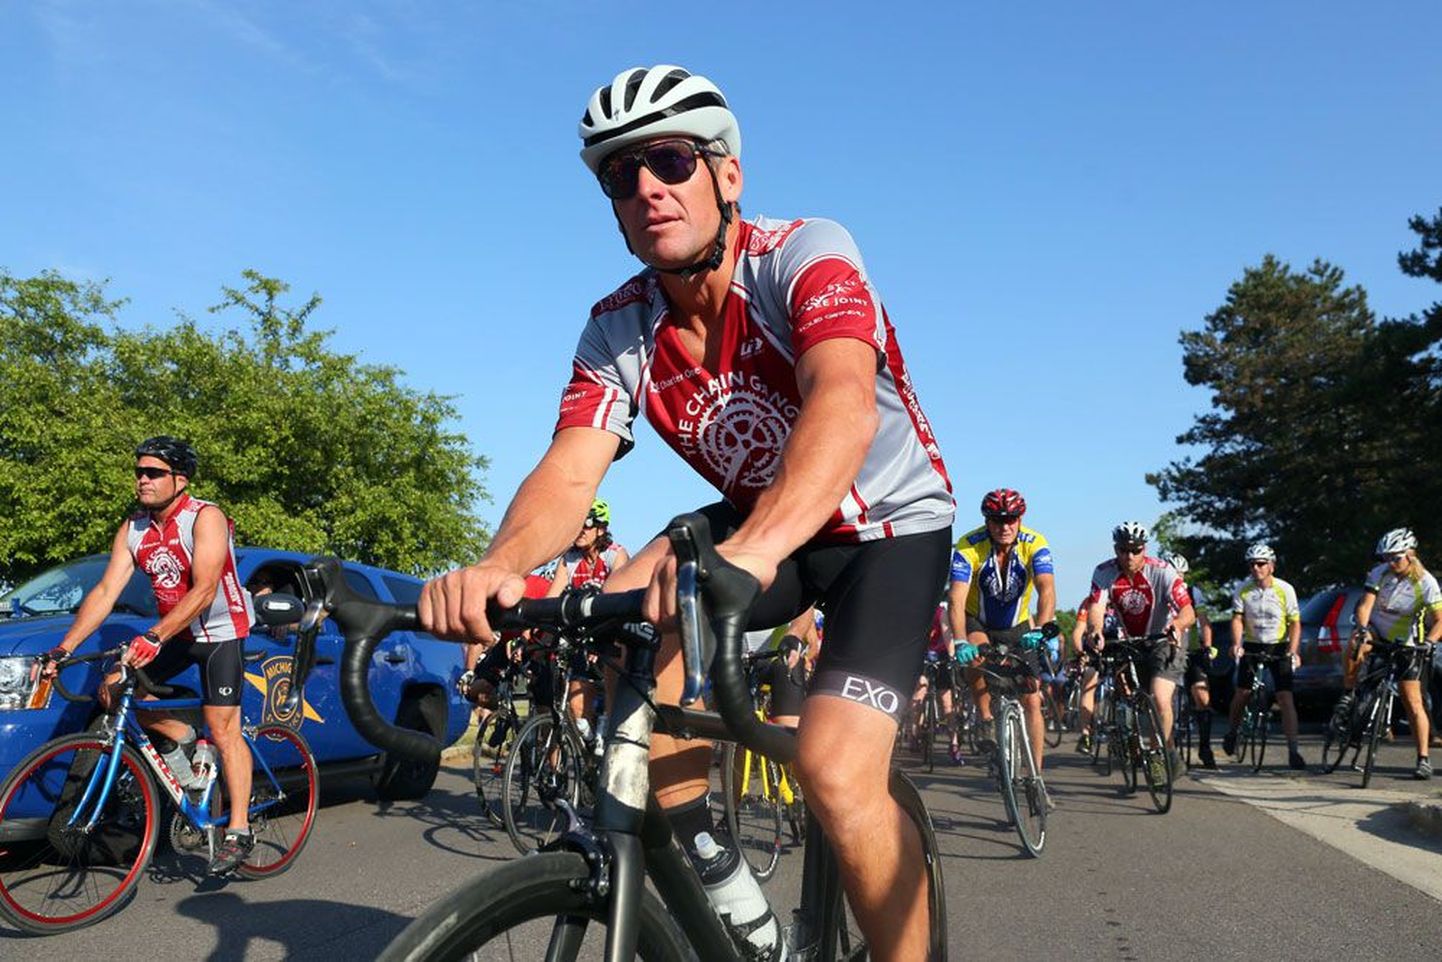 Эритропоэтин (ЭПО) использовал и скандально известный велогонщик Лэнс Армстронг, семикратный победитель Тур де Франс, который в 2012 году был пожизненно дисквалифицирован за применение допинга и лишен всех спортивных титулов, полученных с 1998 года.